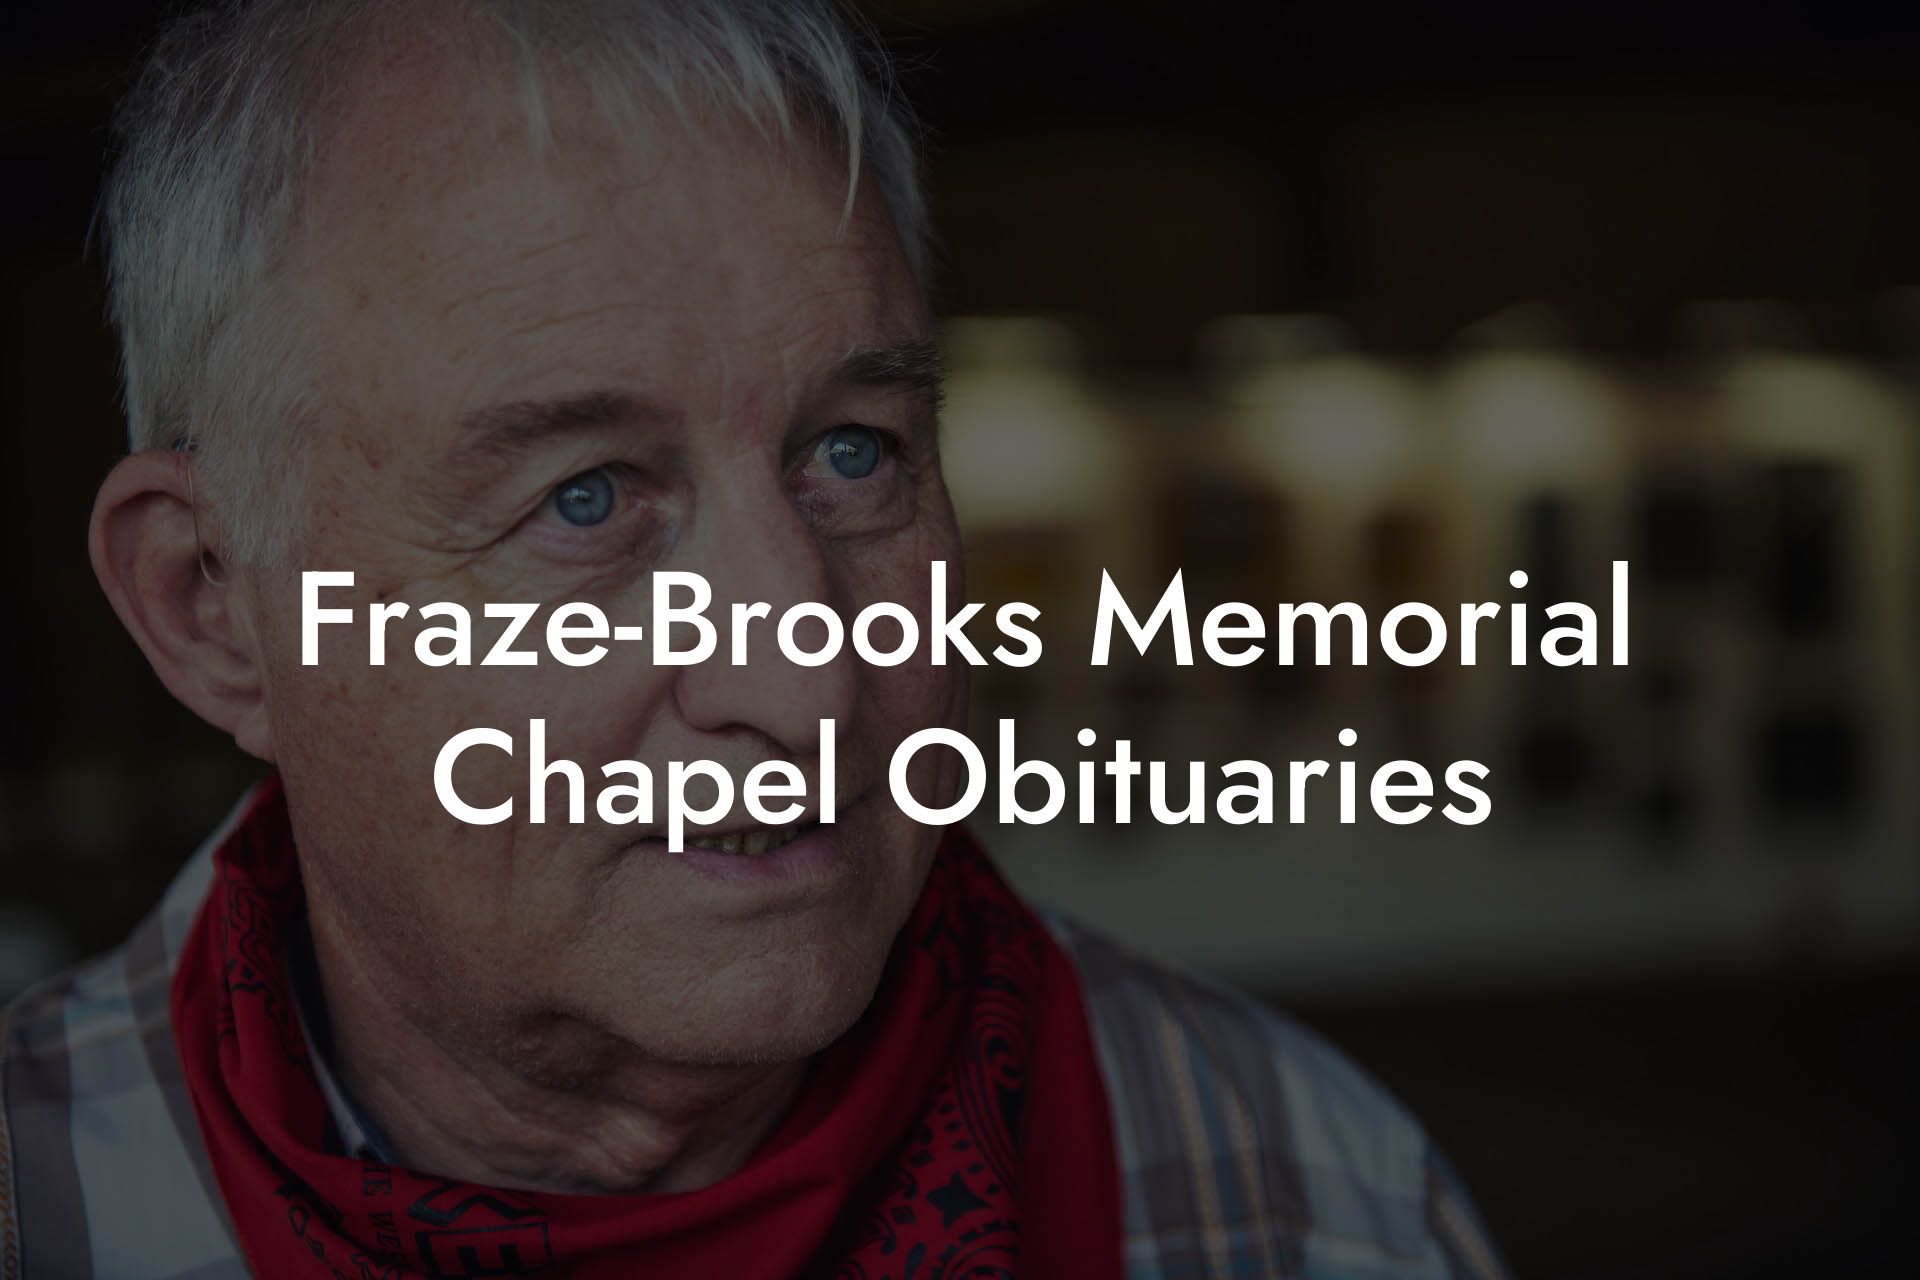 Fraze-Brooks Memorial Chapel Obituaries